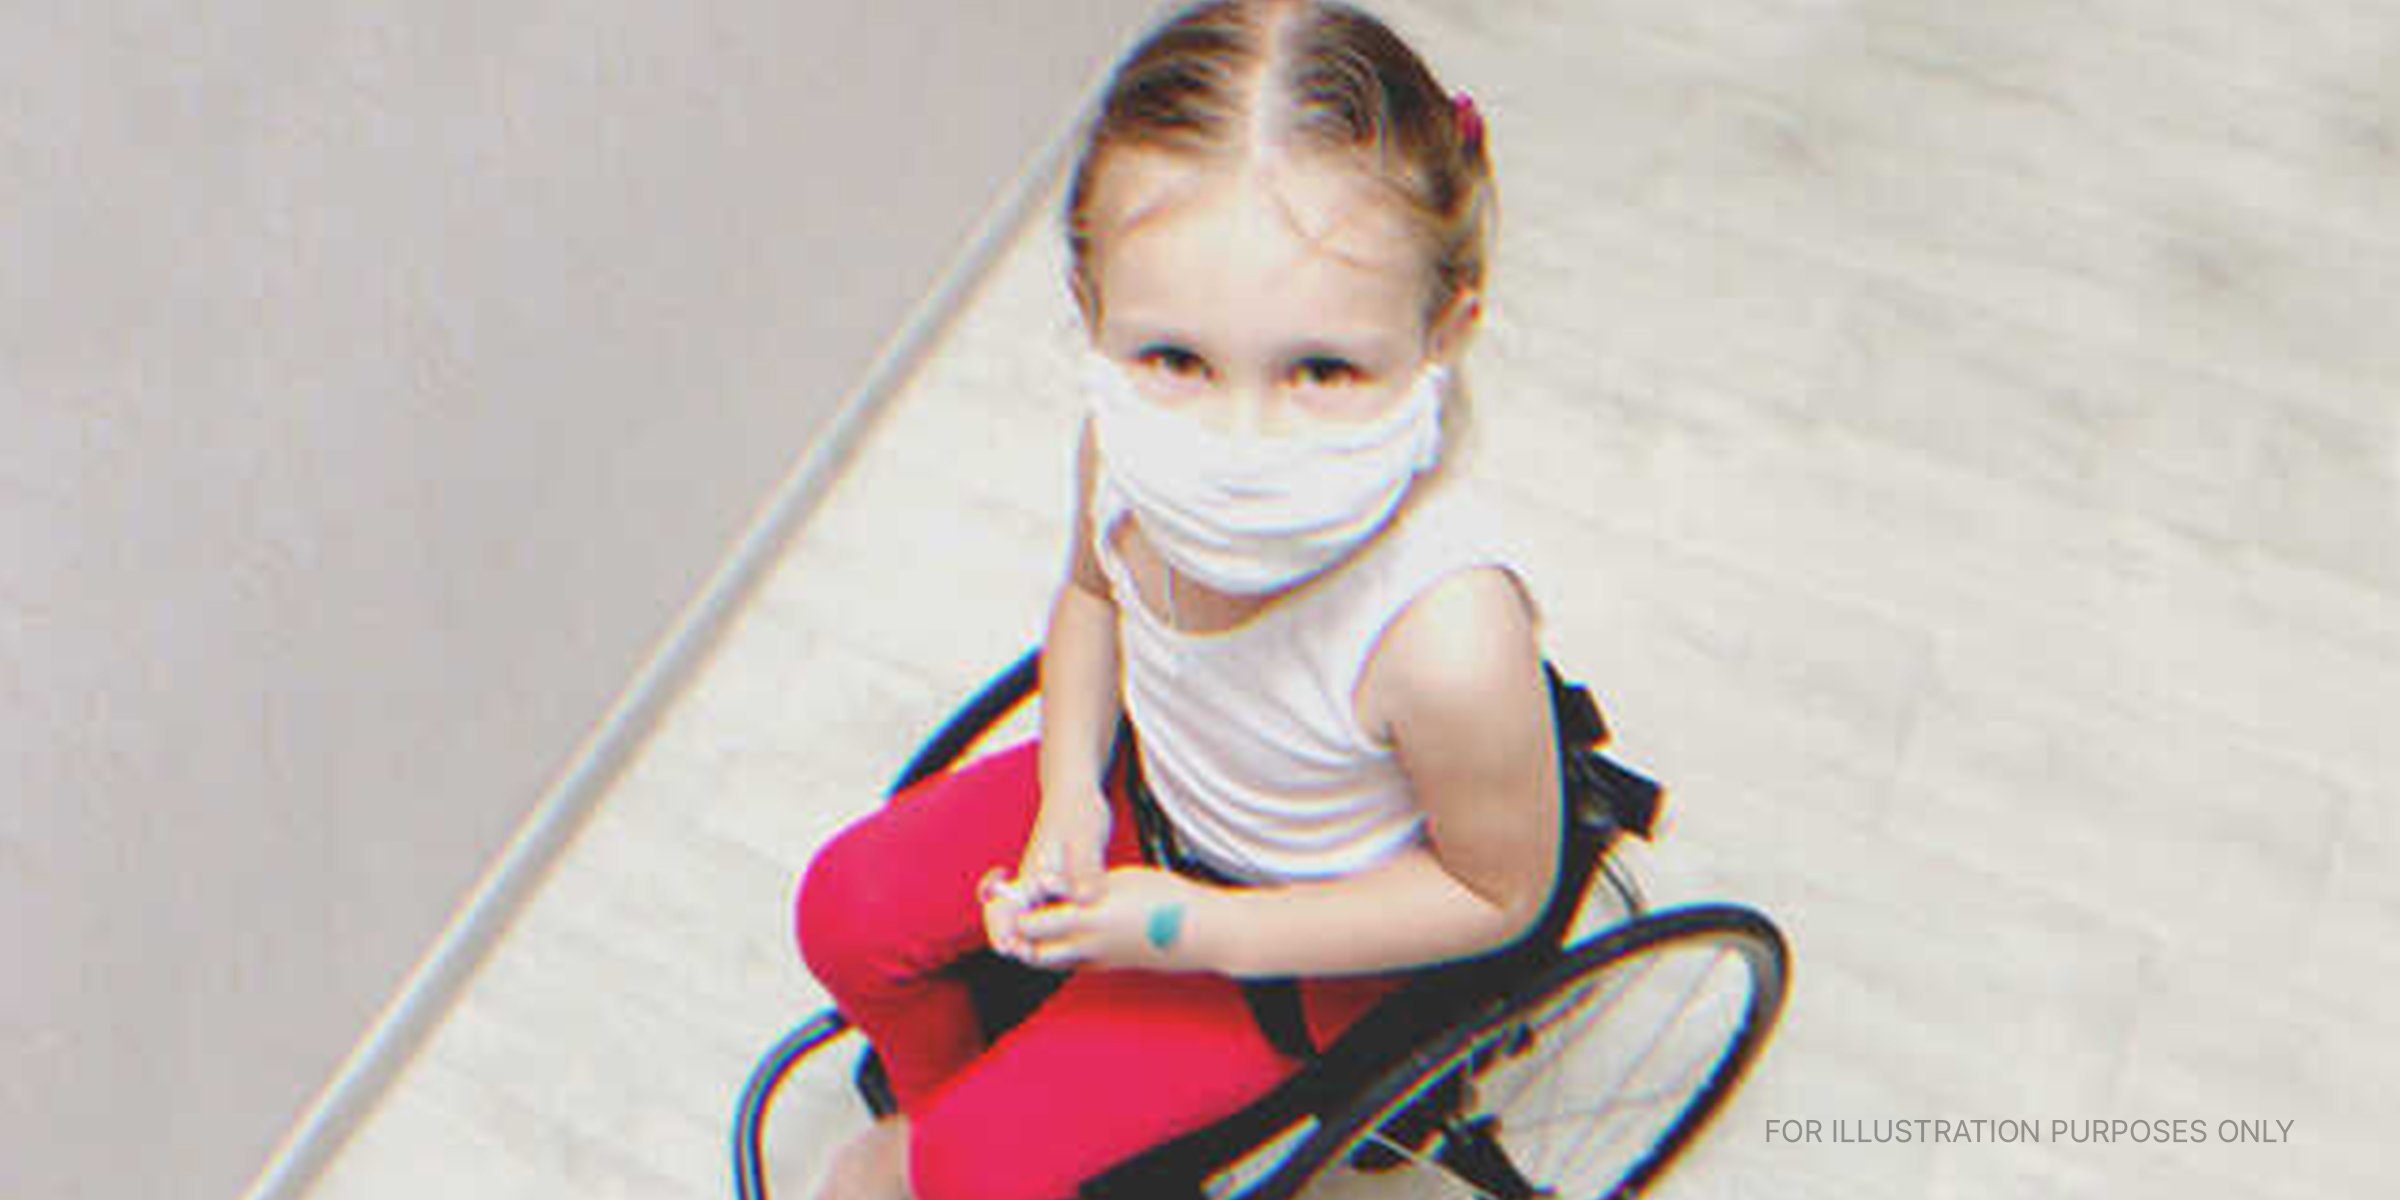 A little girl on a wheelchair | Source: Shutterstock